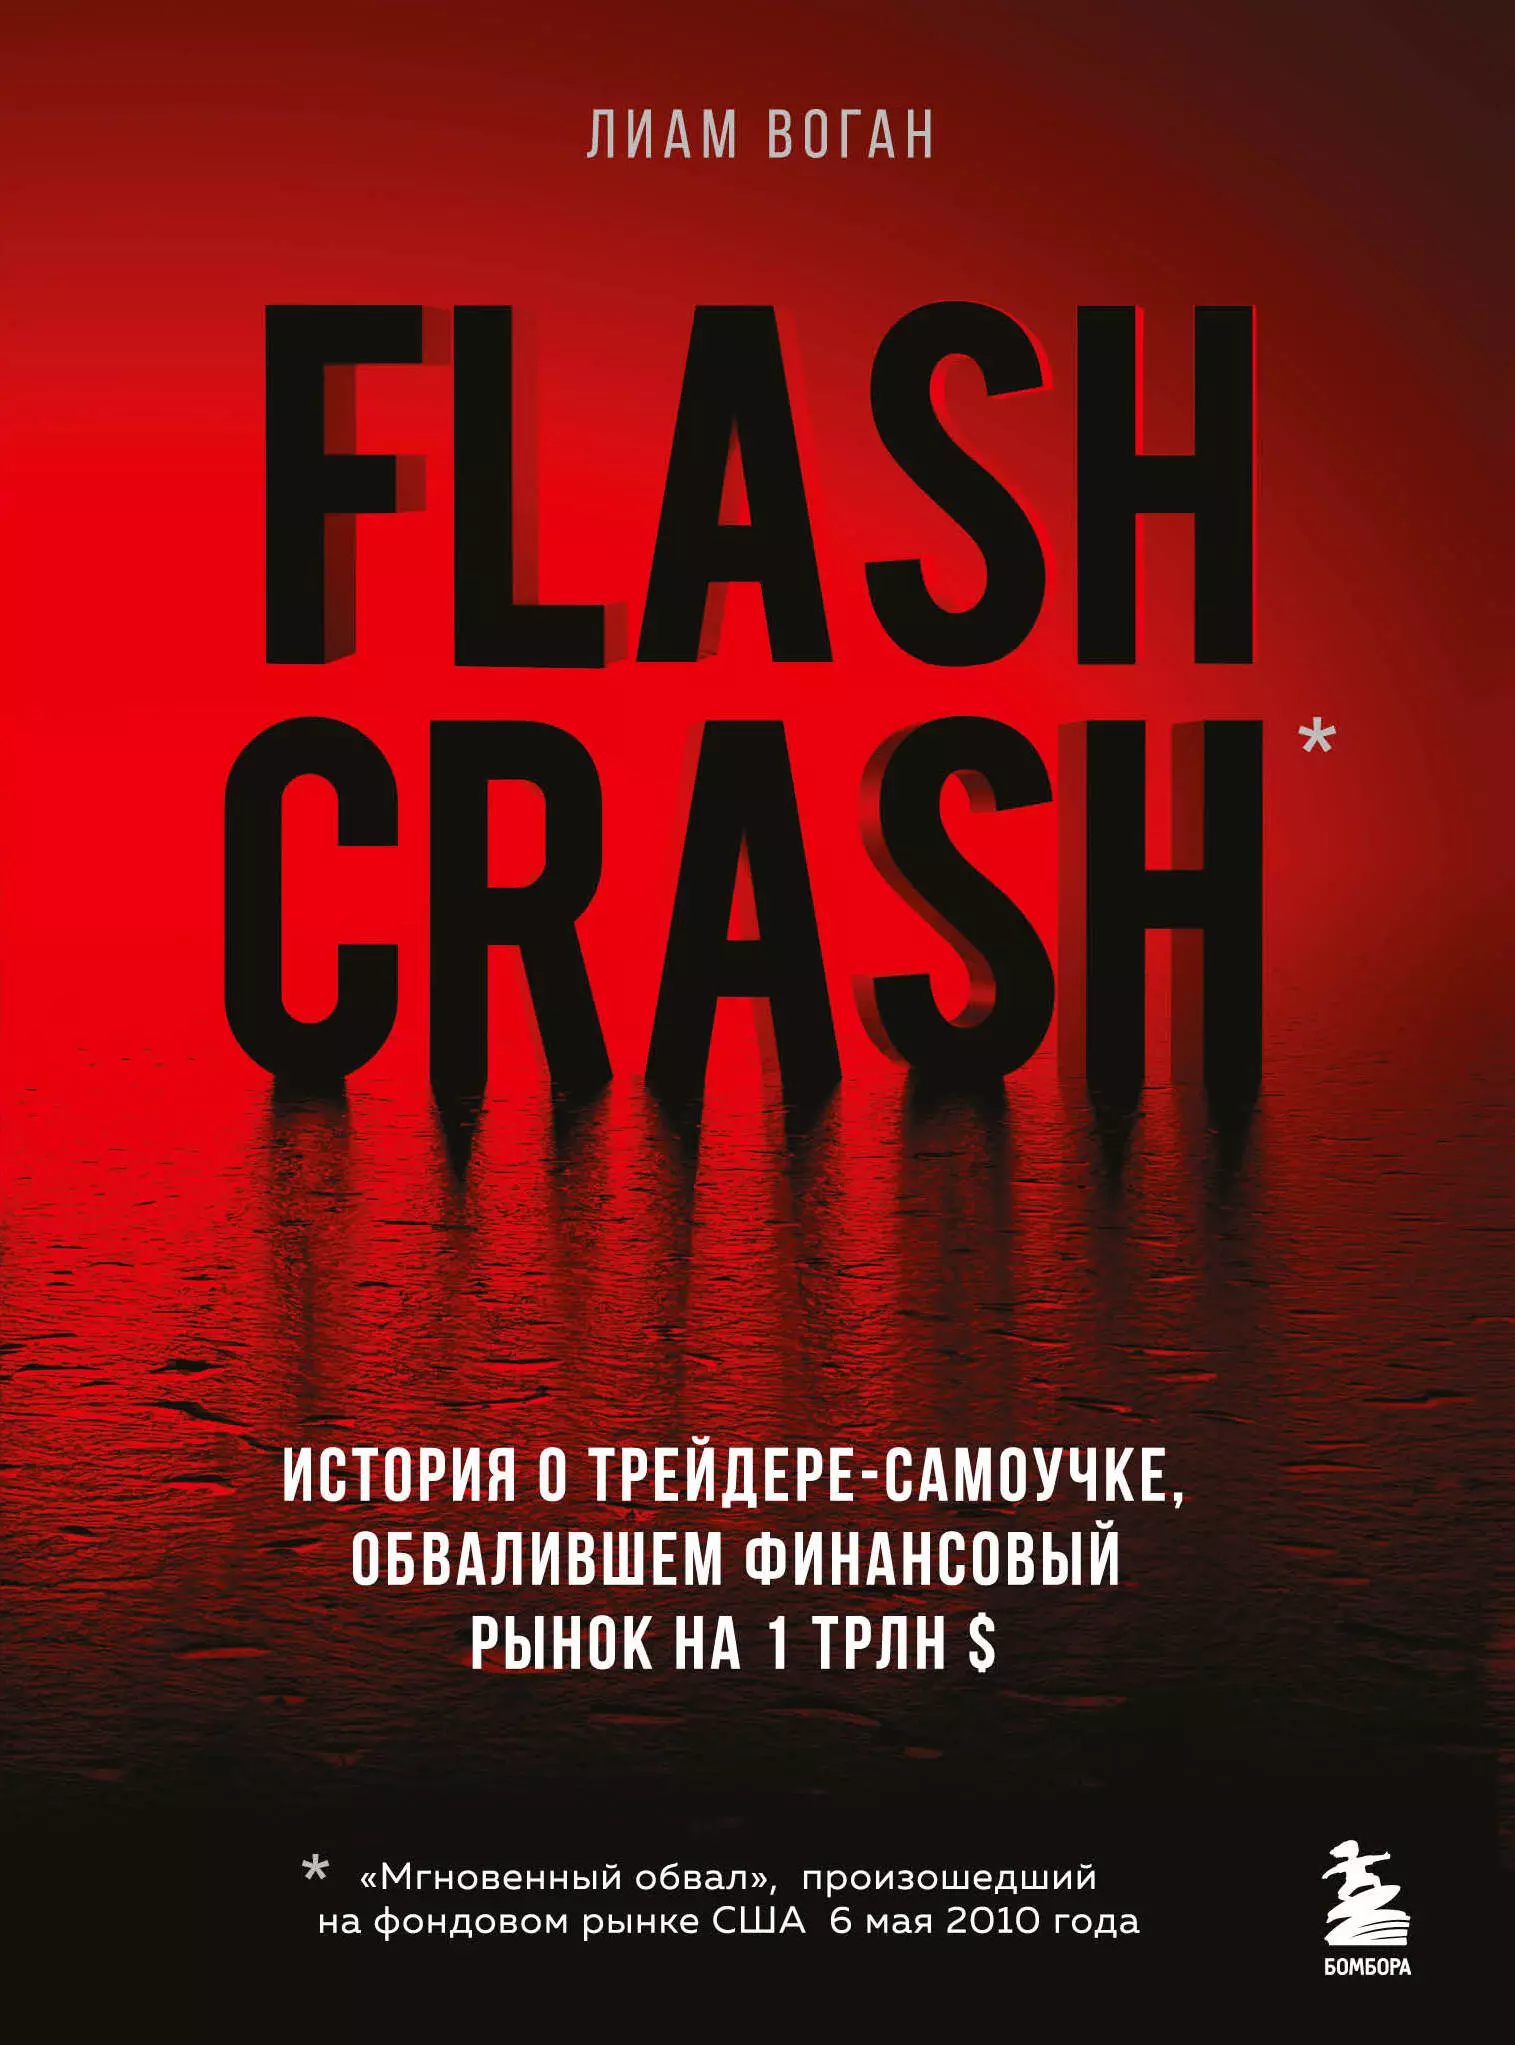 Воган Лиам - Flash Crash. История о трейдере-самоучке, обвалившем финансовый рынок на 1 трлн $